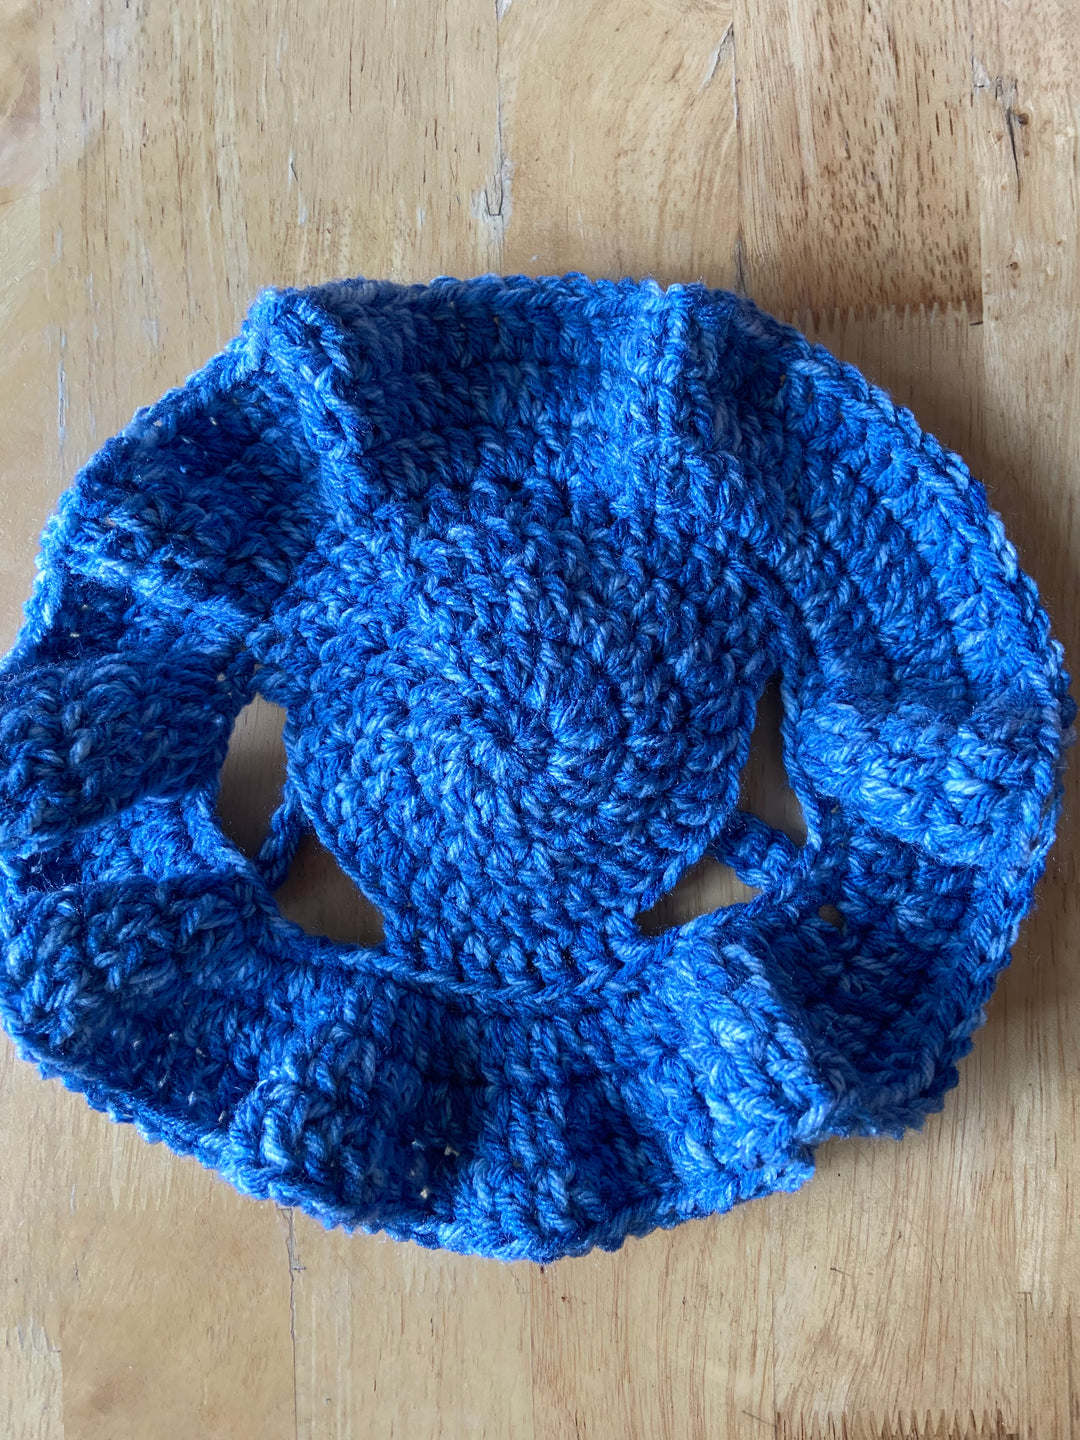 Crochet Bucket Hat Fur Friends Edition 🐕